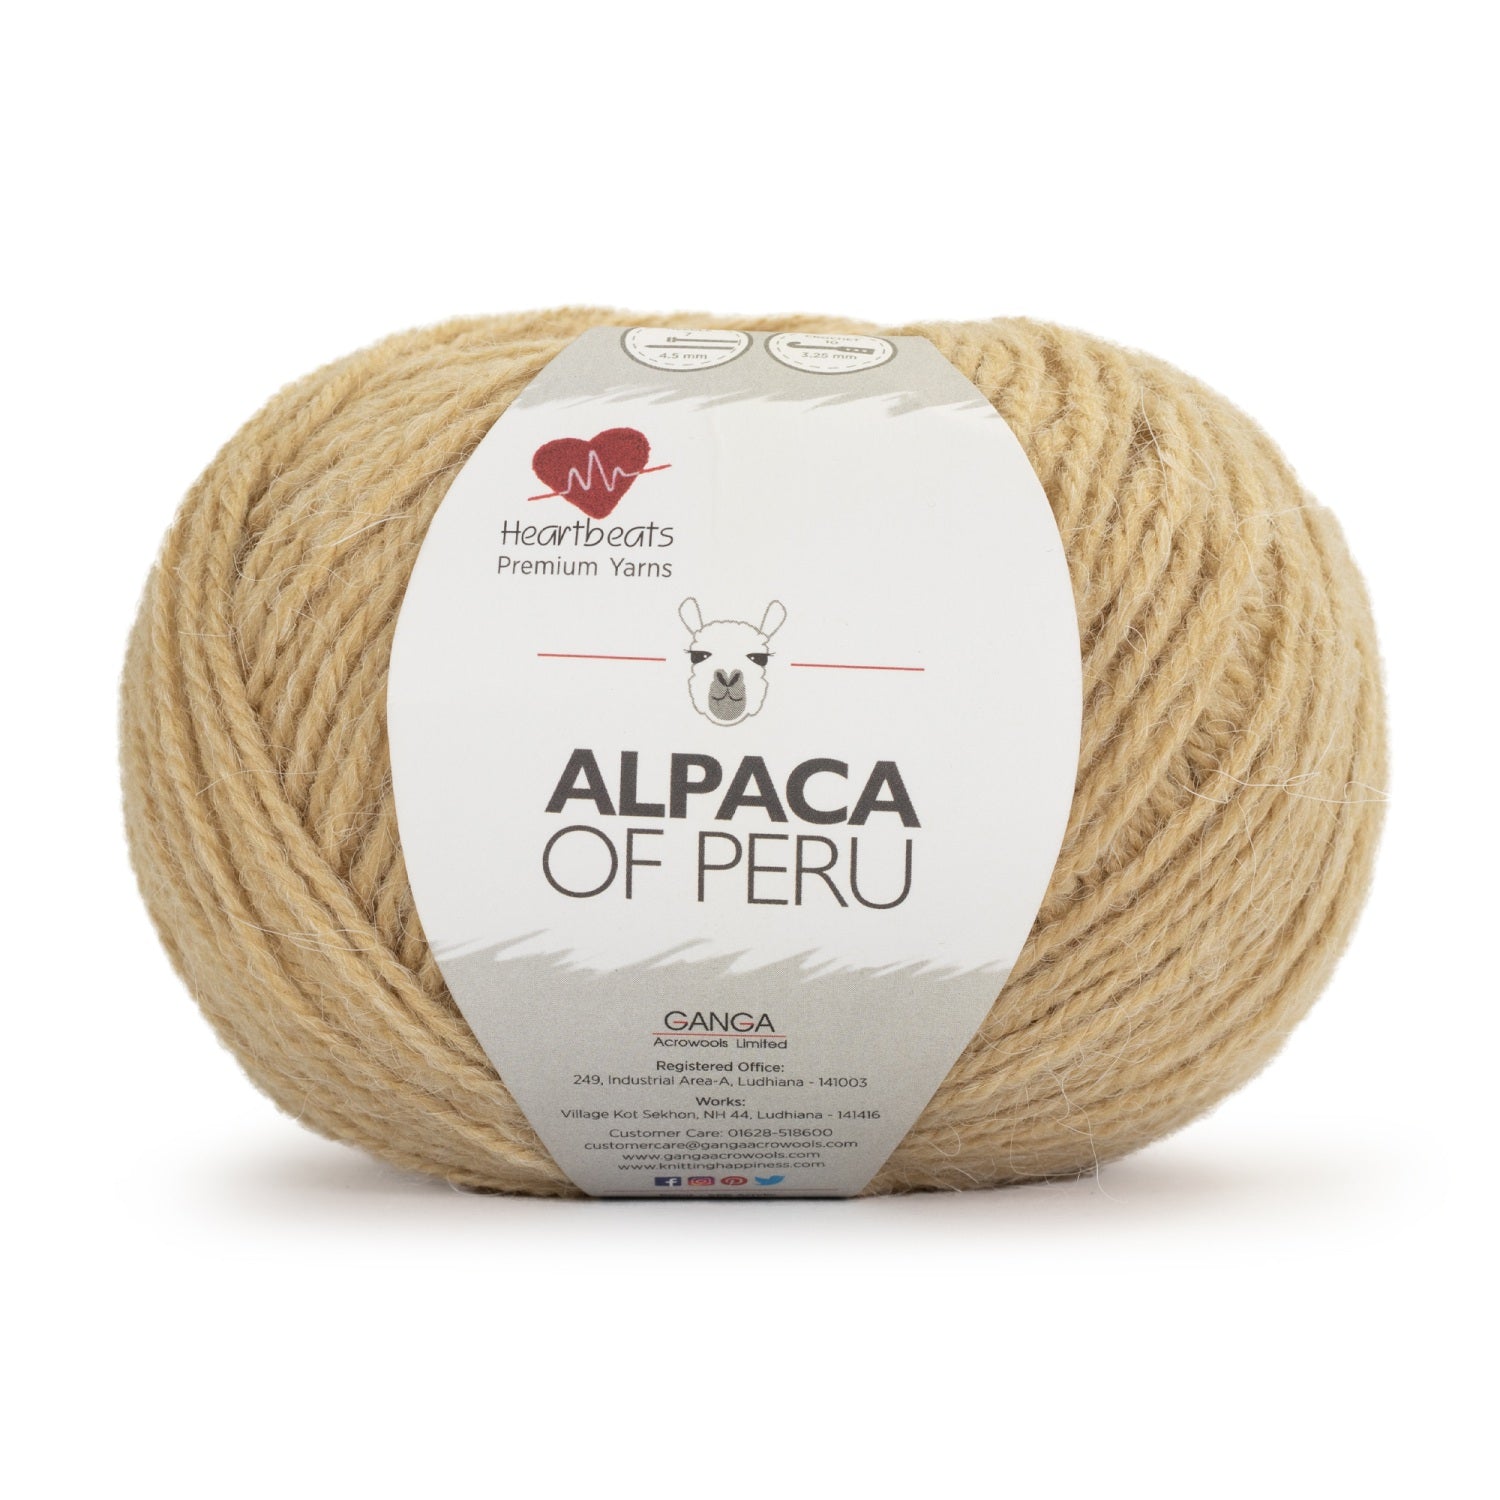 Alpaca of Peru